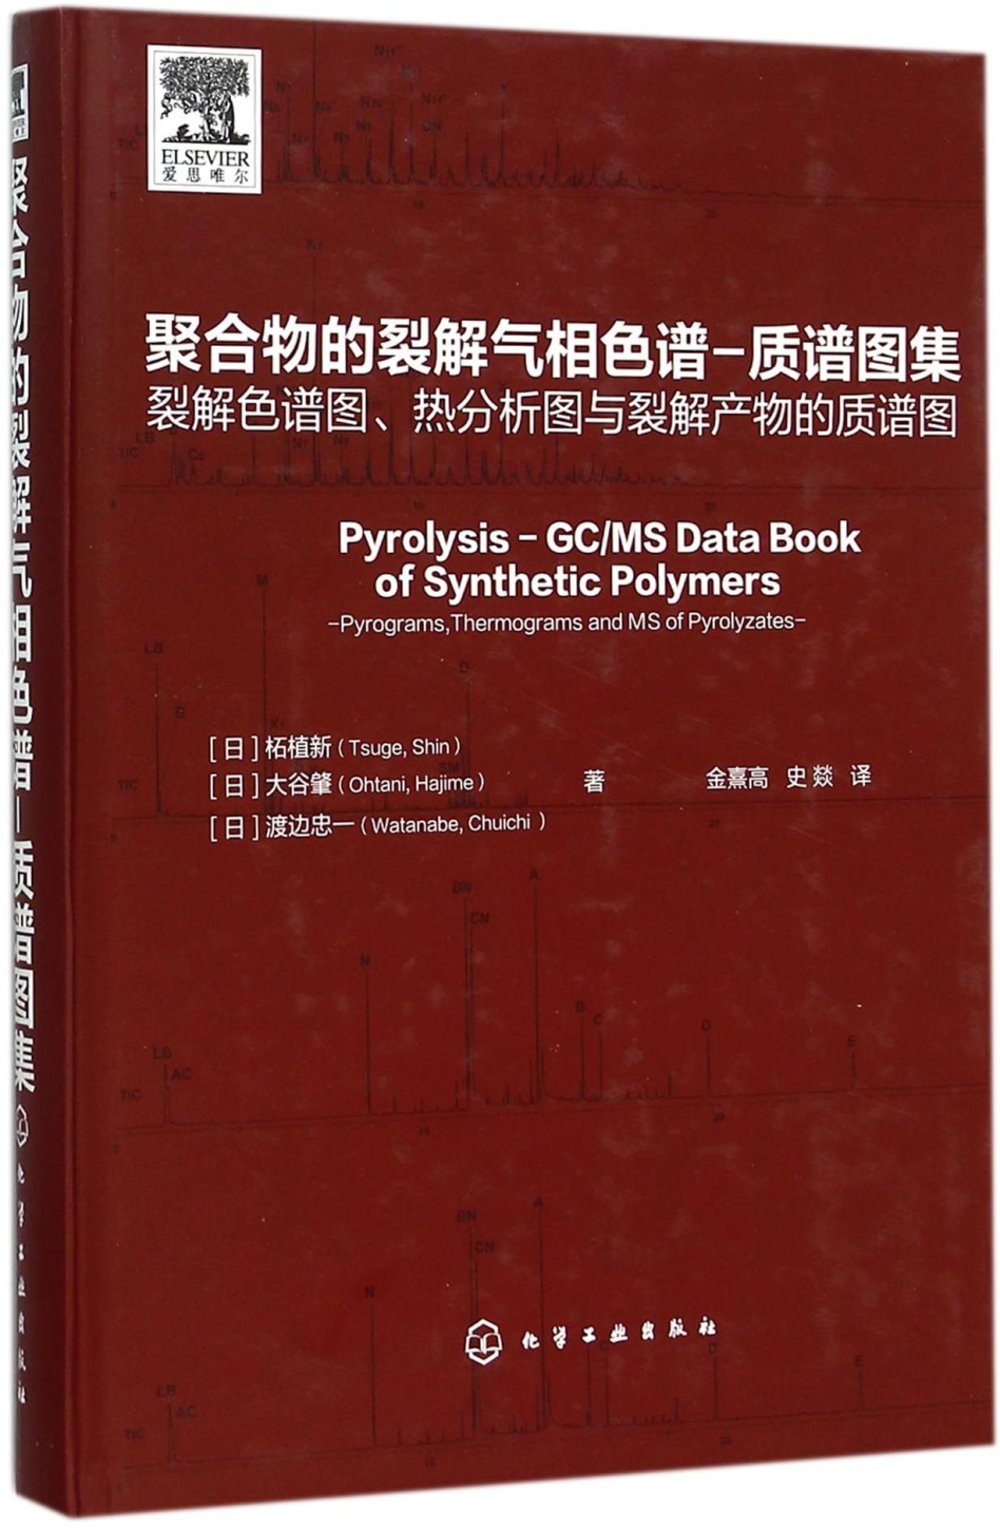 聚合物的裂解氣相色譜-質譜圖集：裂解色譜圖、熱分析圖與裂解產物的質譜圖